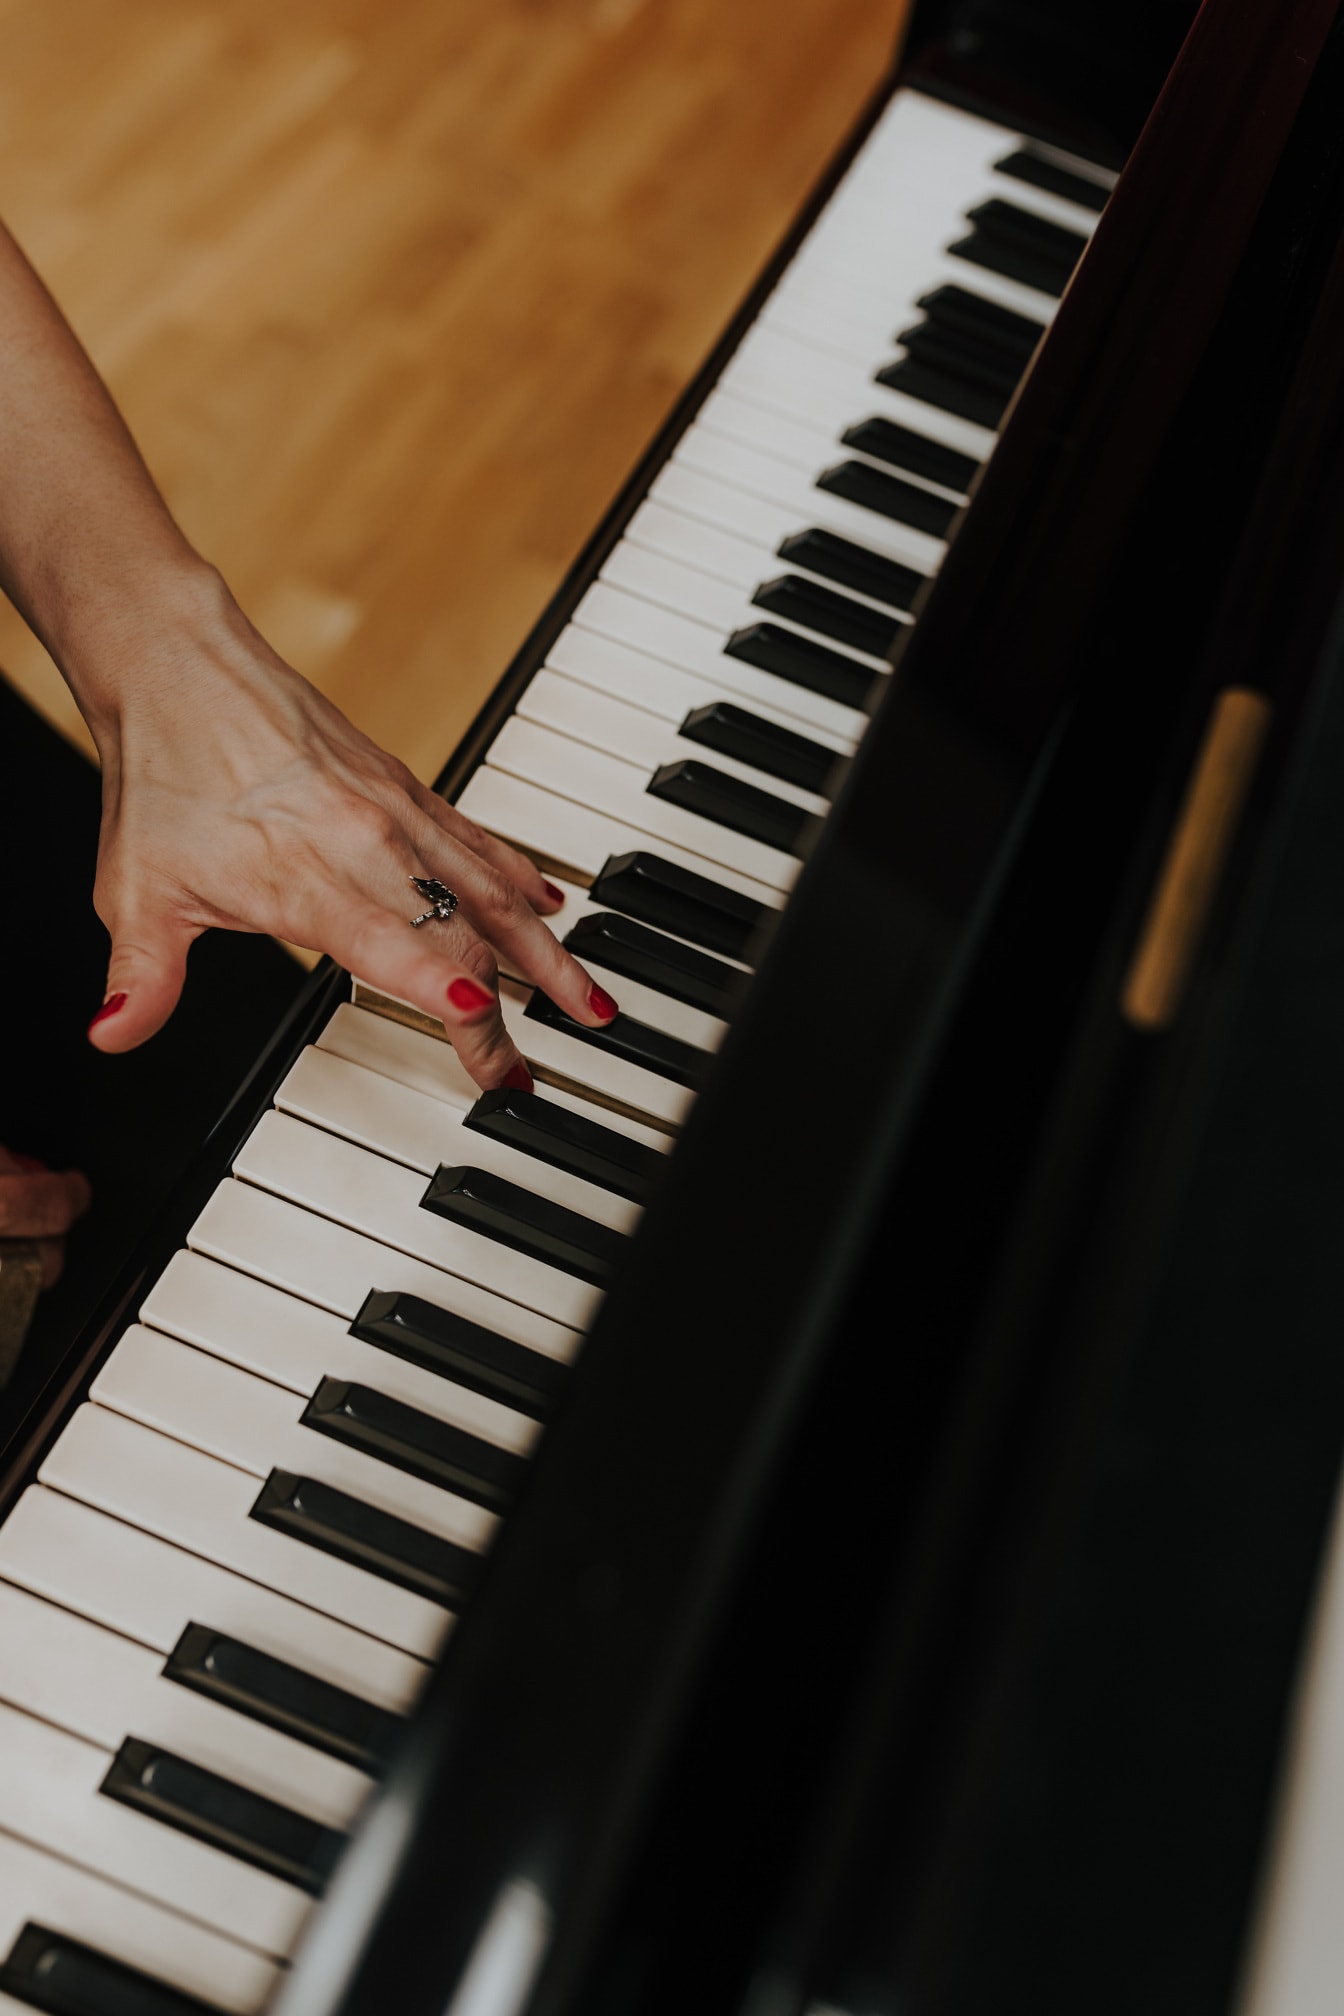 Женщина играет на пианино крупным планом красного лака для ногтей на пальцах